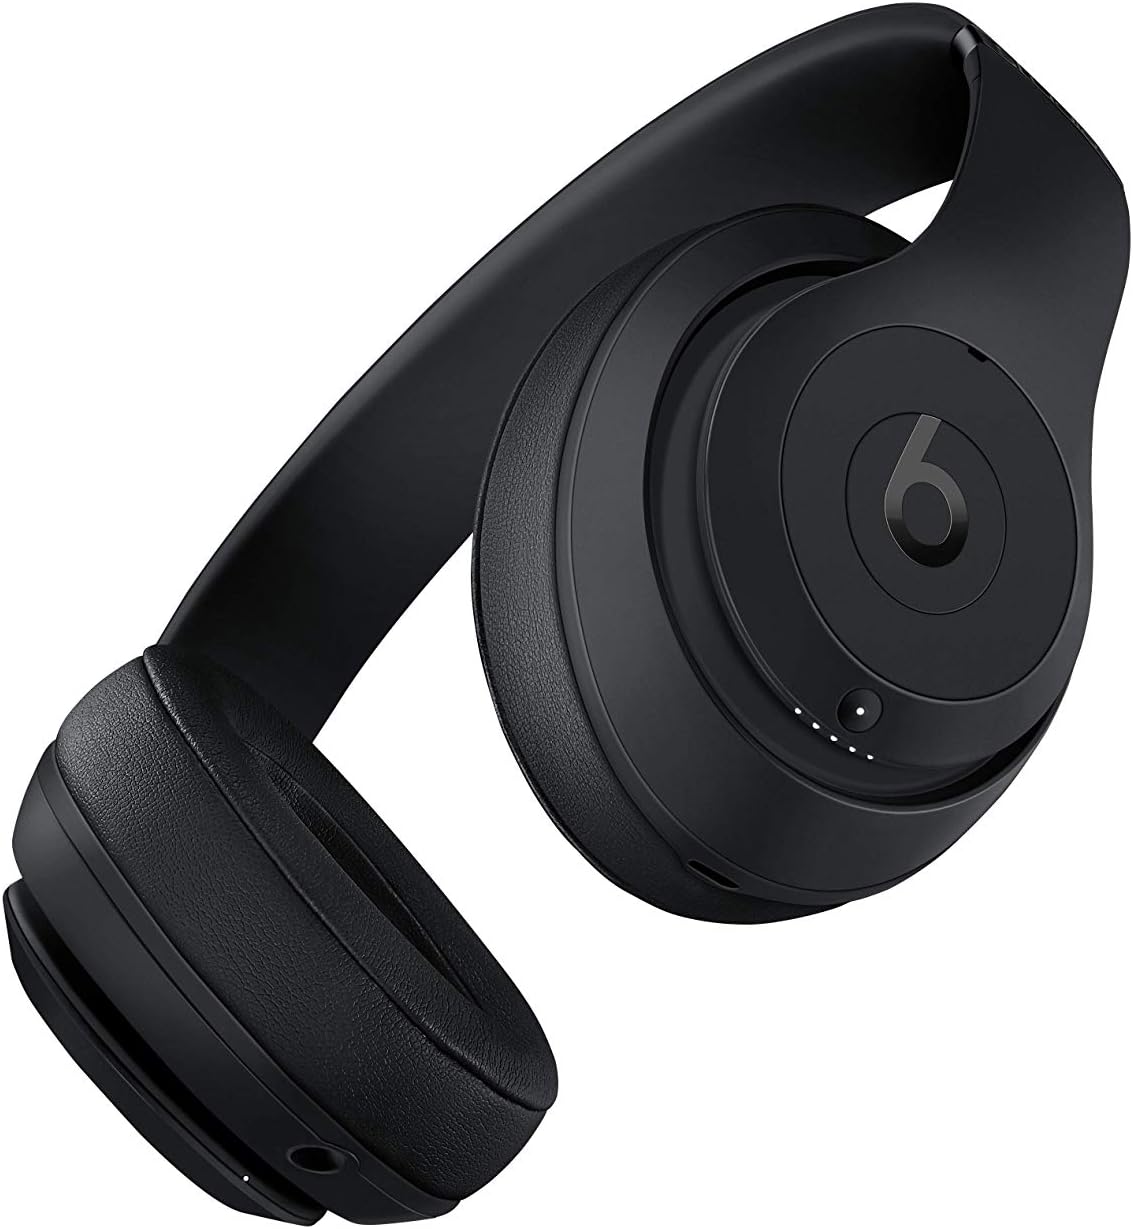 Beats Studio3 Wireless Over Ear Headphones - Matte Black